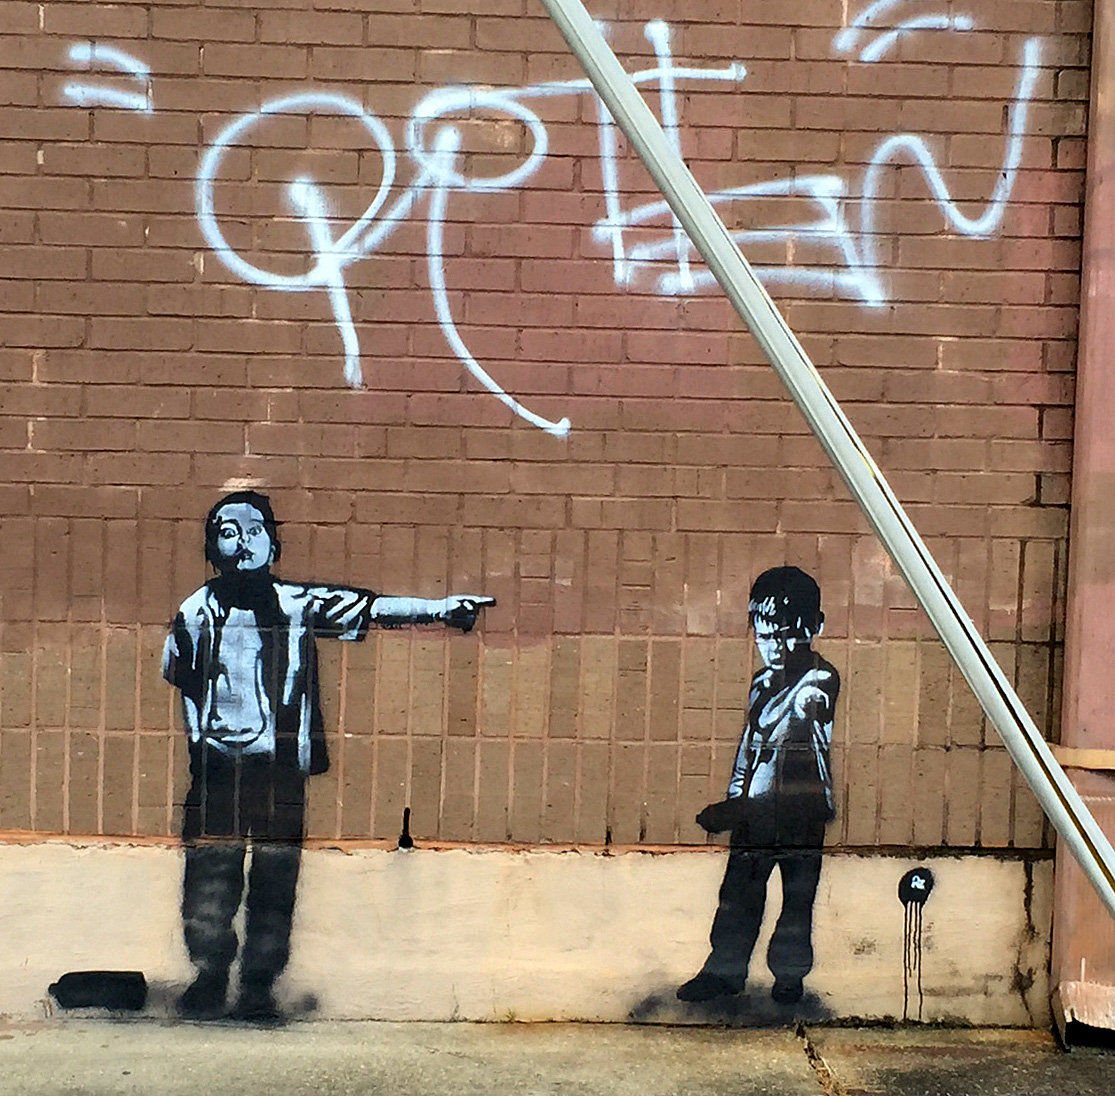 This is not a Banksy, it's an Az, website reports | Arts | nola.com